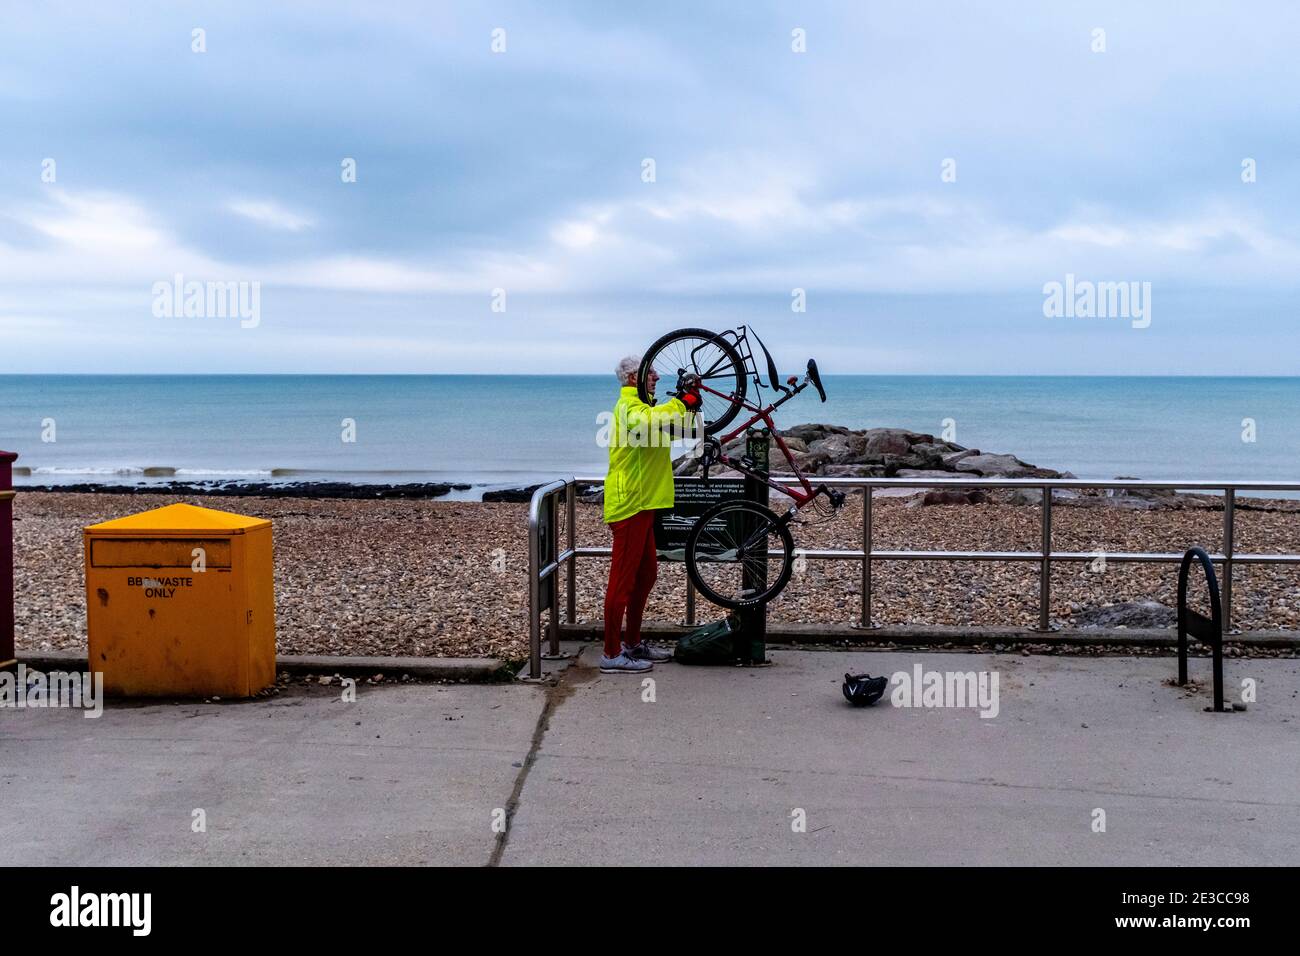 Cycliste en réparation de son vélo, Rotingdean près de Brighton, East Sussex, Royaume-Uni. Banque D'Images